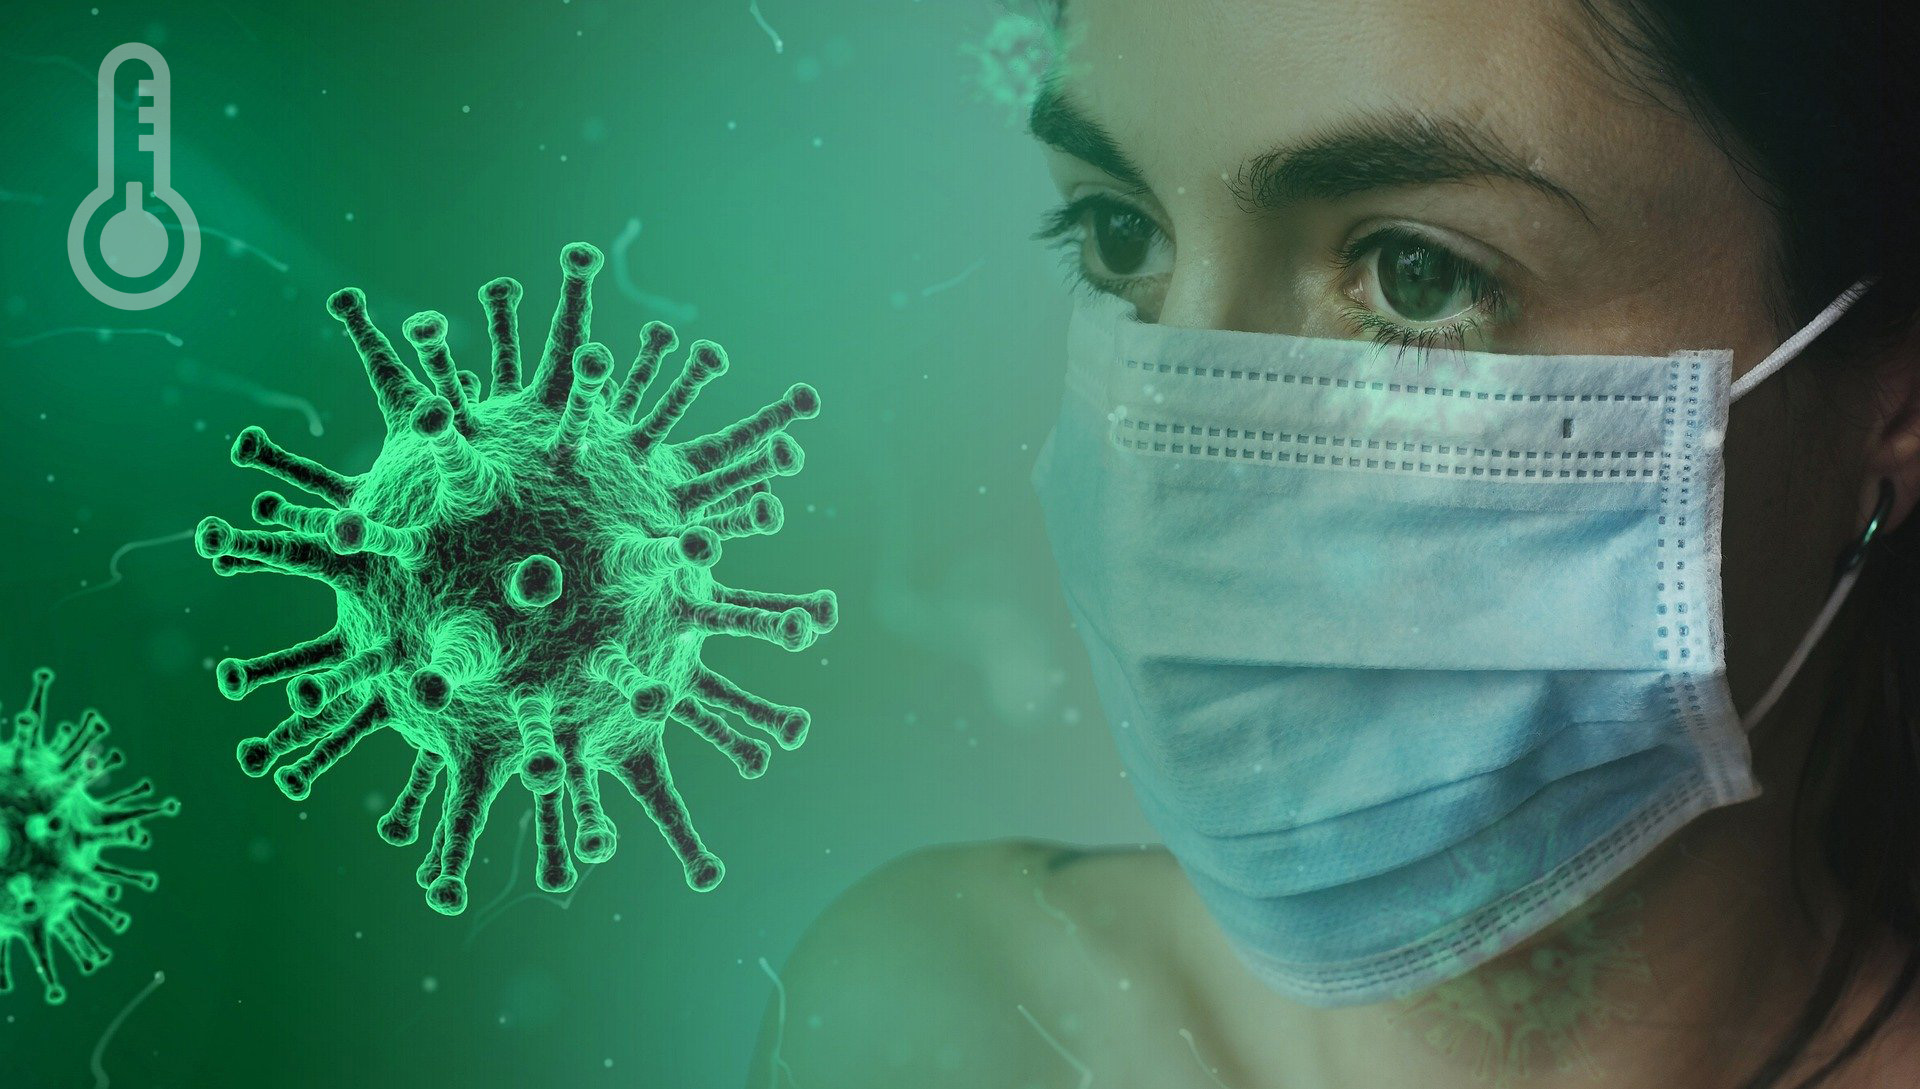 Proč je chřípka rozšířenější v zimě a platí to i pro koronavirus?10 min čtení